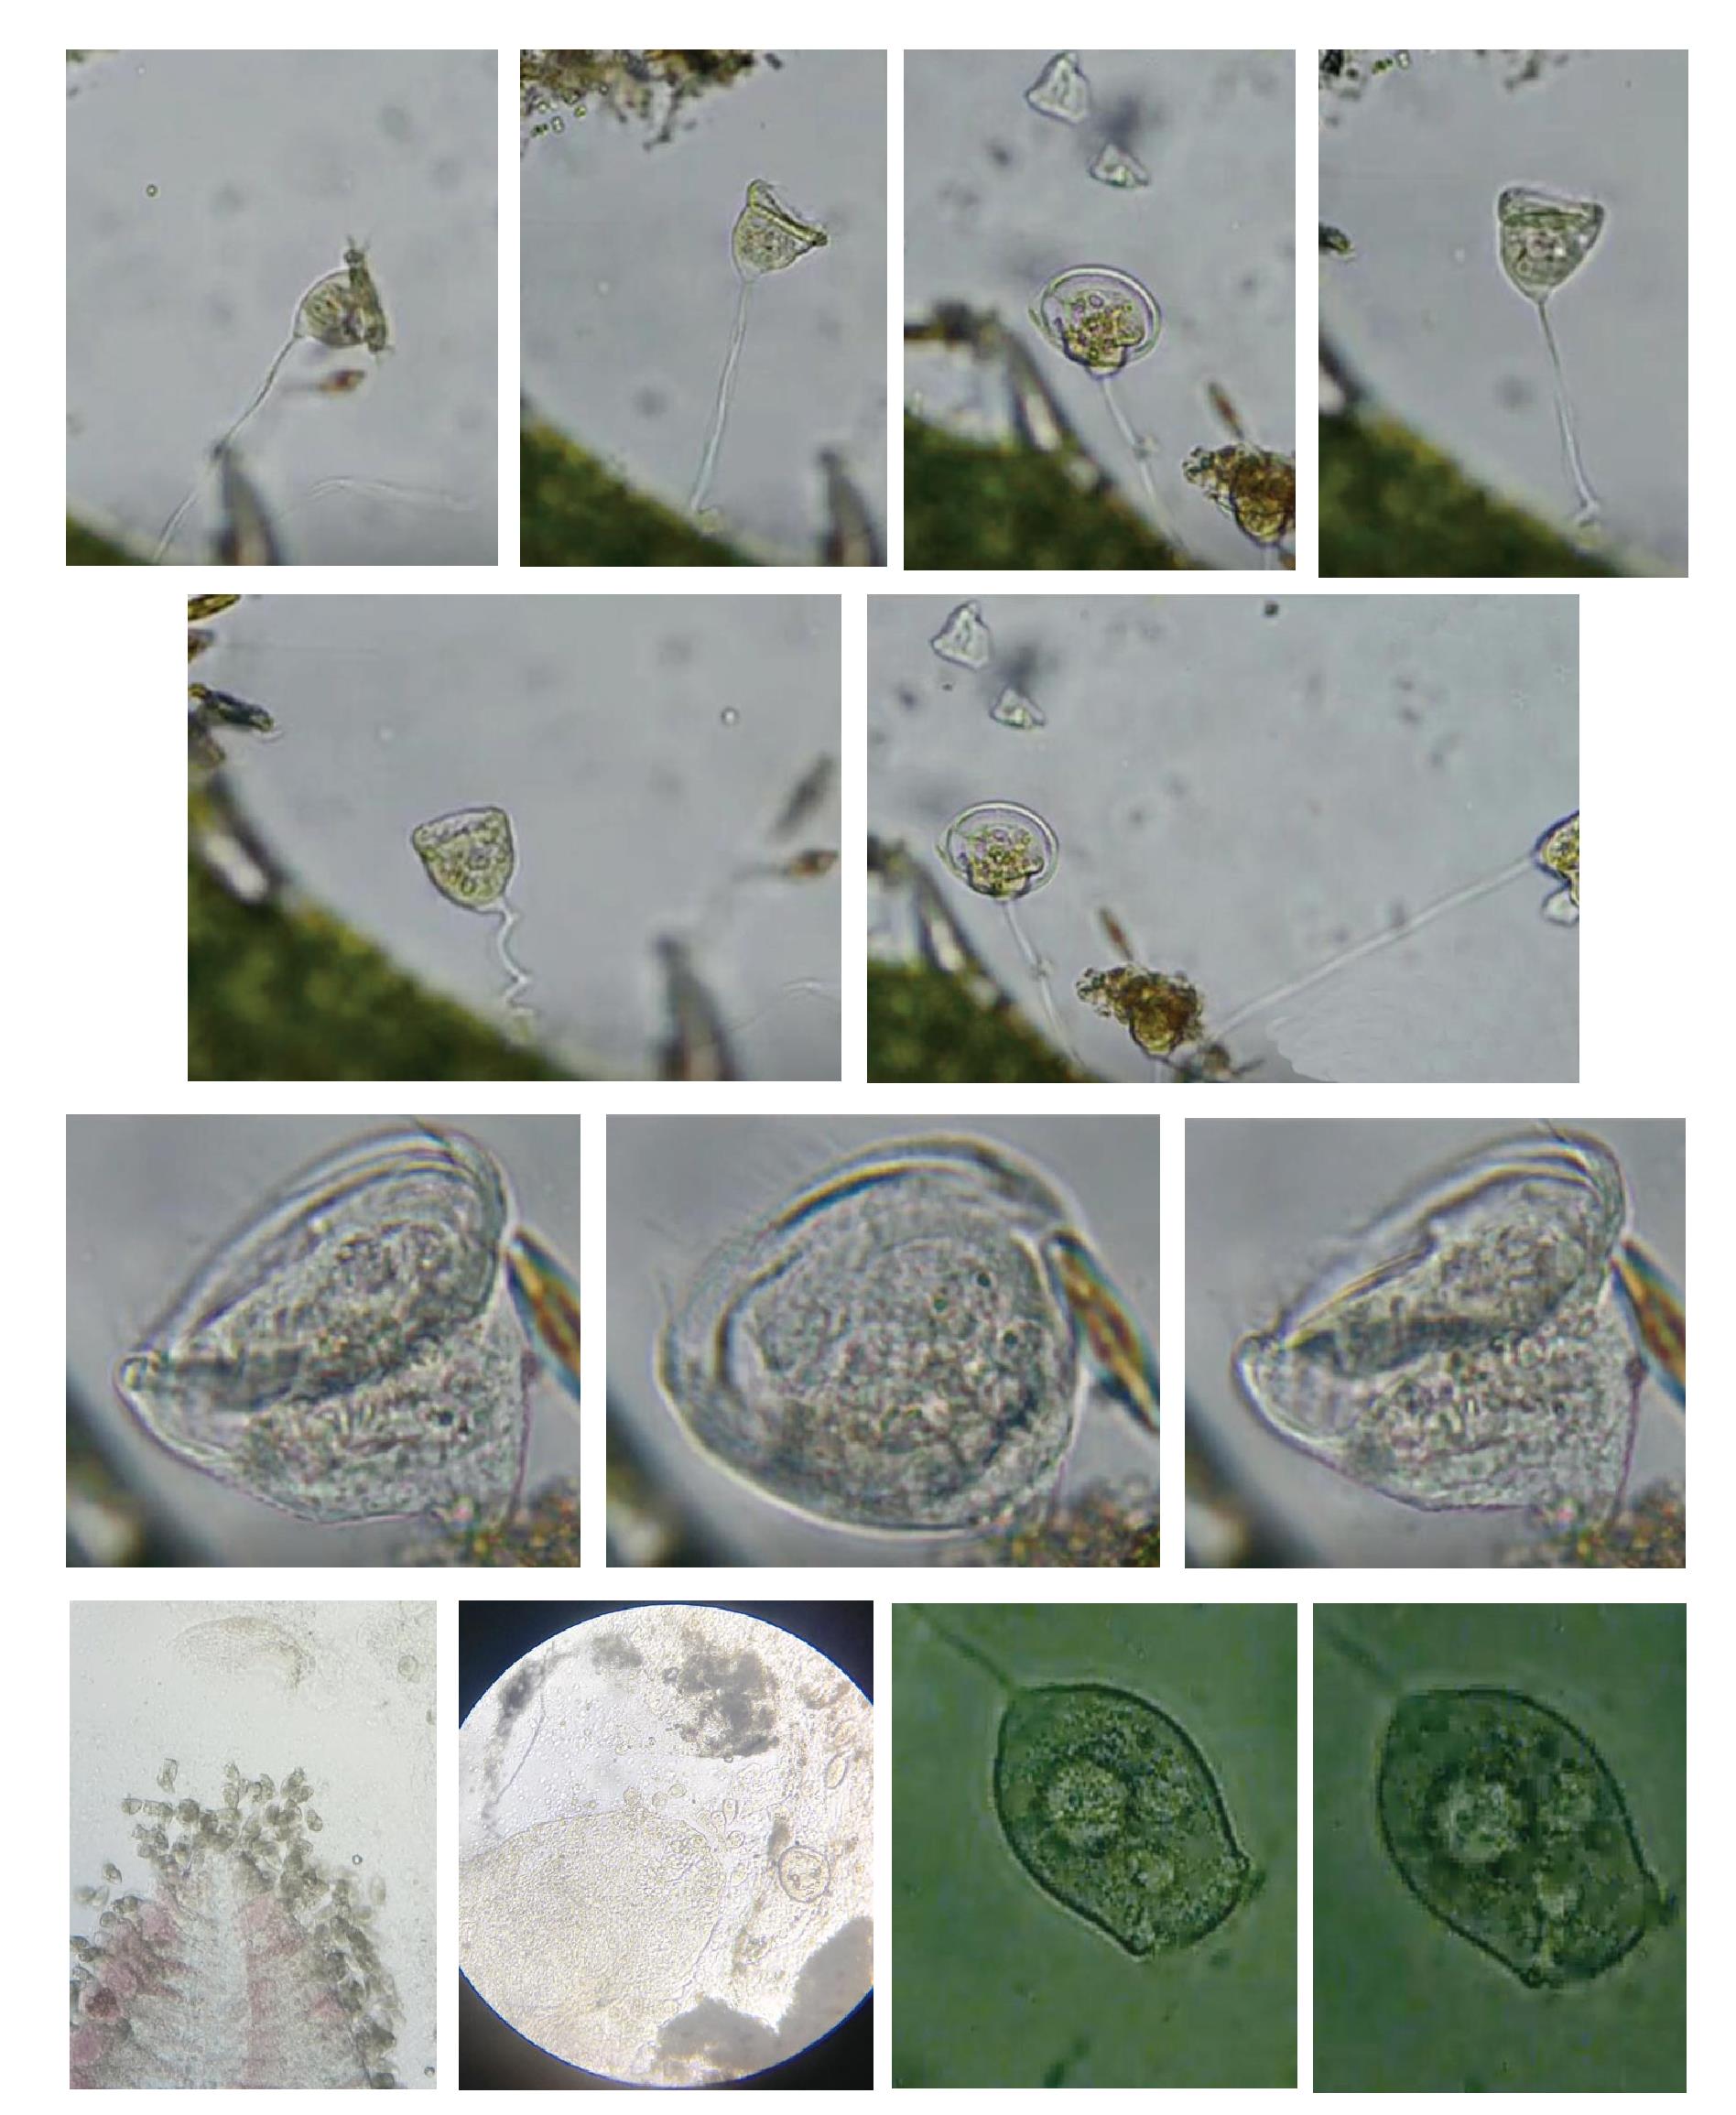 车轮虫-璇口轮虫-鬓毛虫-枝虫-丝状菌大合集 - 微生物镜检 - 污托邦社区